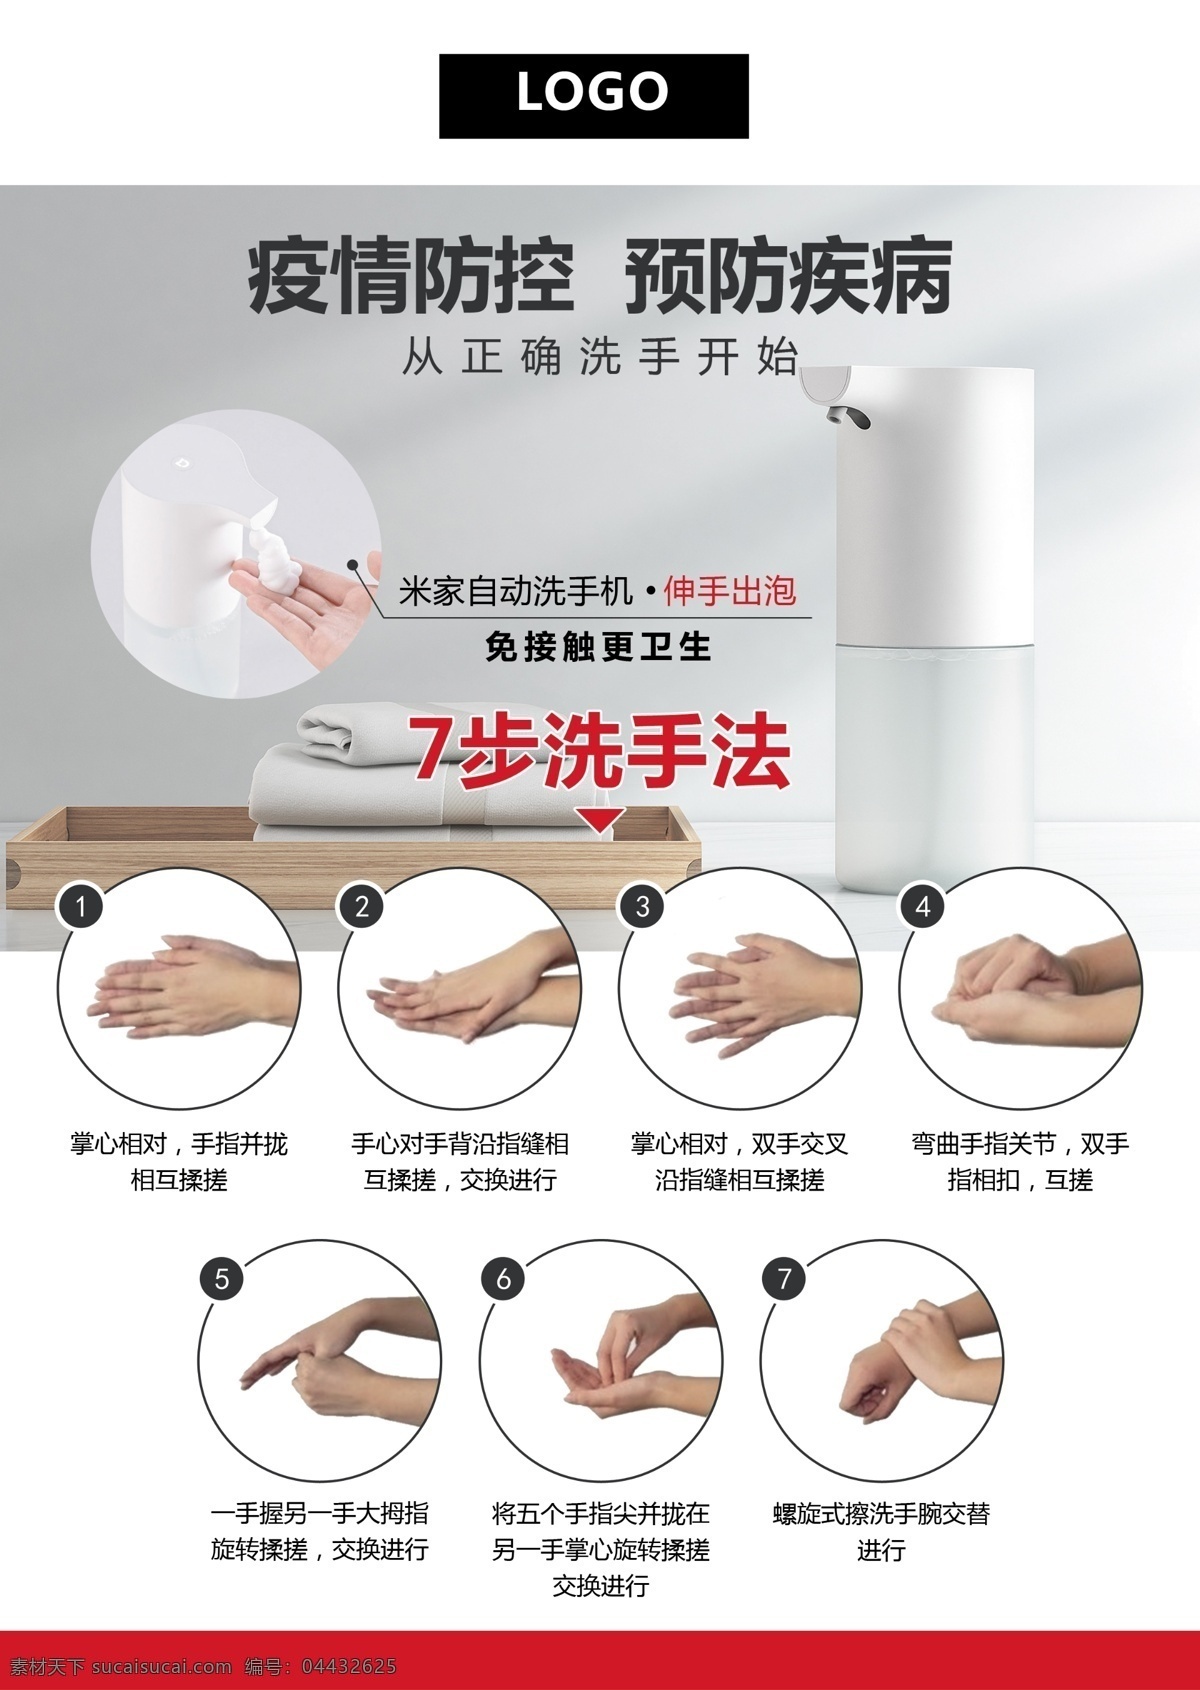 洗手 七 步法 宣传海报 疫情防控 洗手7步法 自动洗手机 放心安全 海报 分层